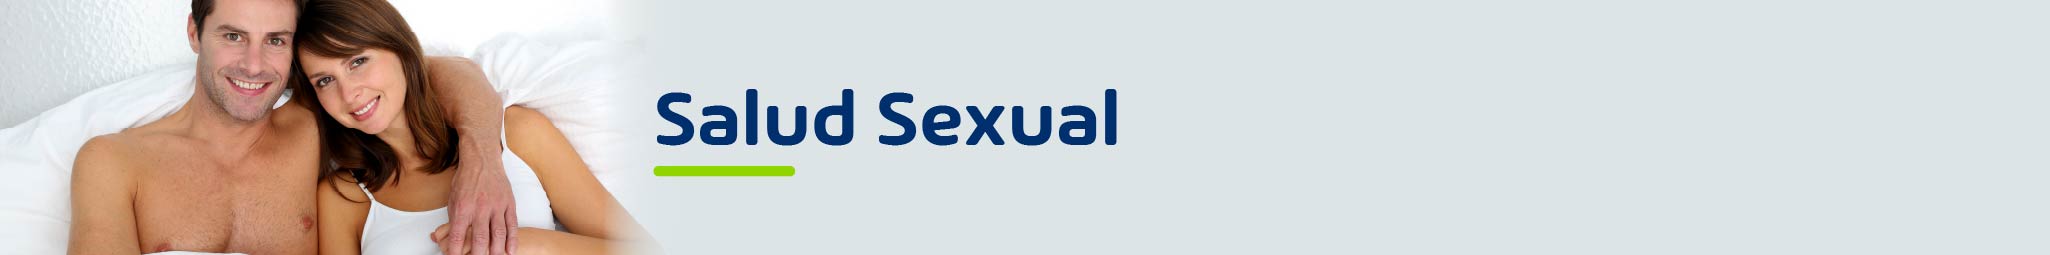 Cuidado personal - Salud sexual